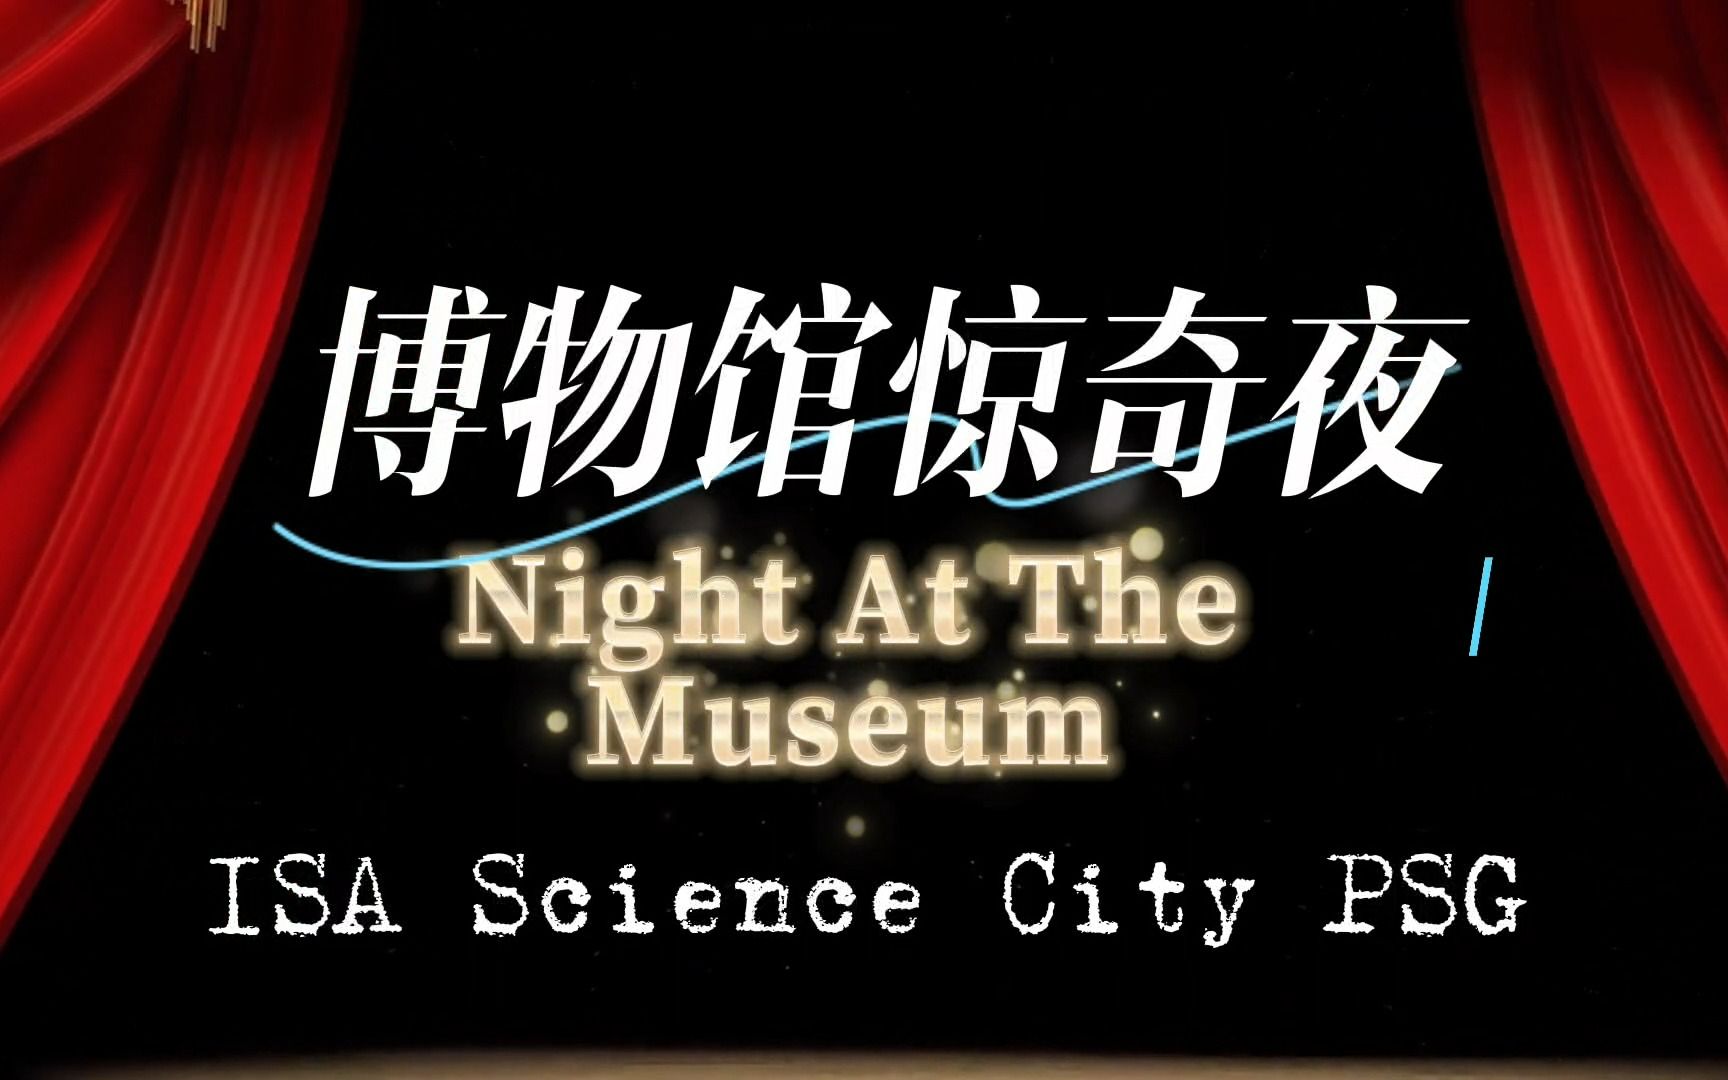 [图]【爱莎日回顾】爱莎科学城PSG家委会 'Night At The Museum 博物馆惊奇夜'演绎收藏于中外博物馆的世界名作